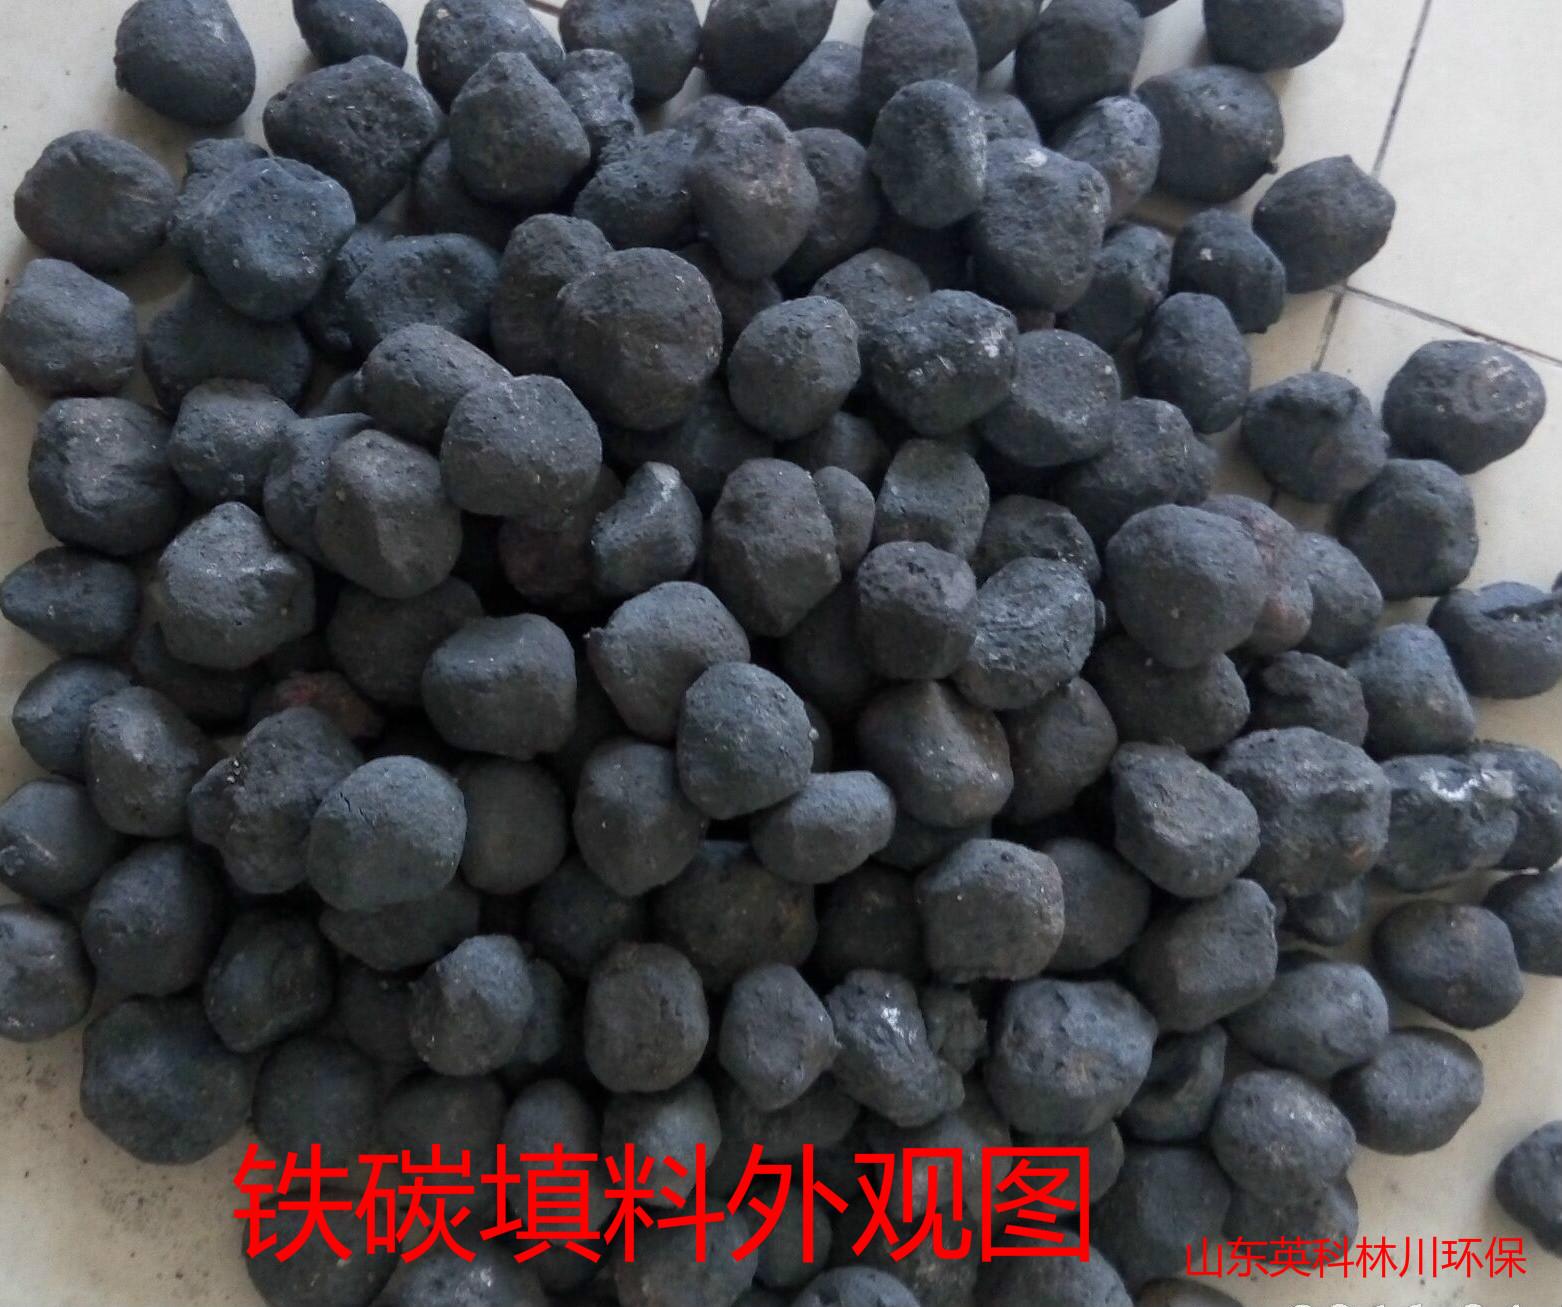 铁碳填料生产厂家_铁碳填料工艺